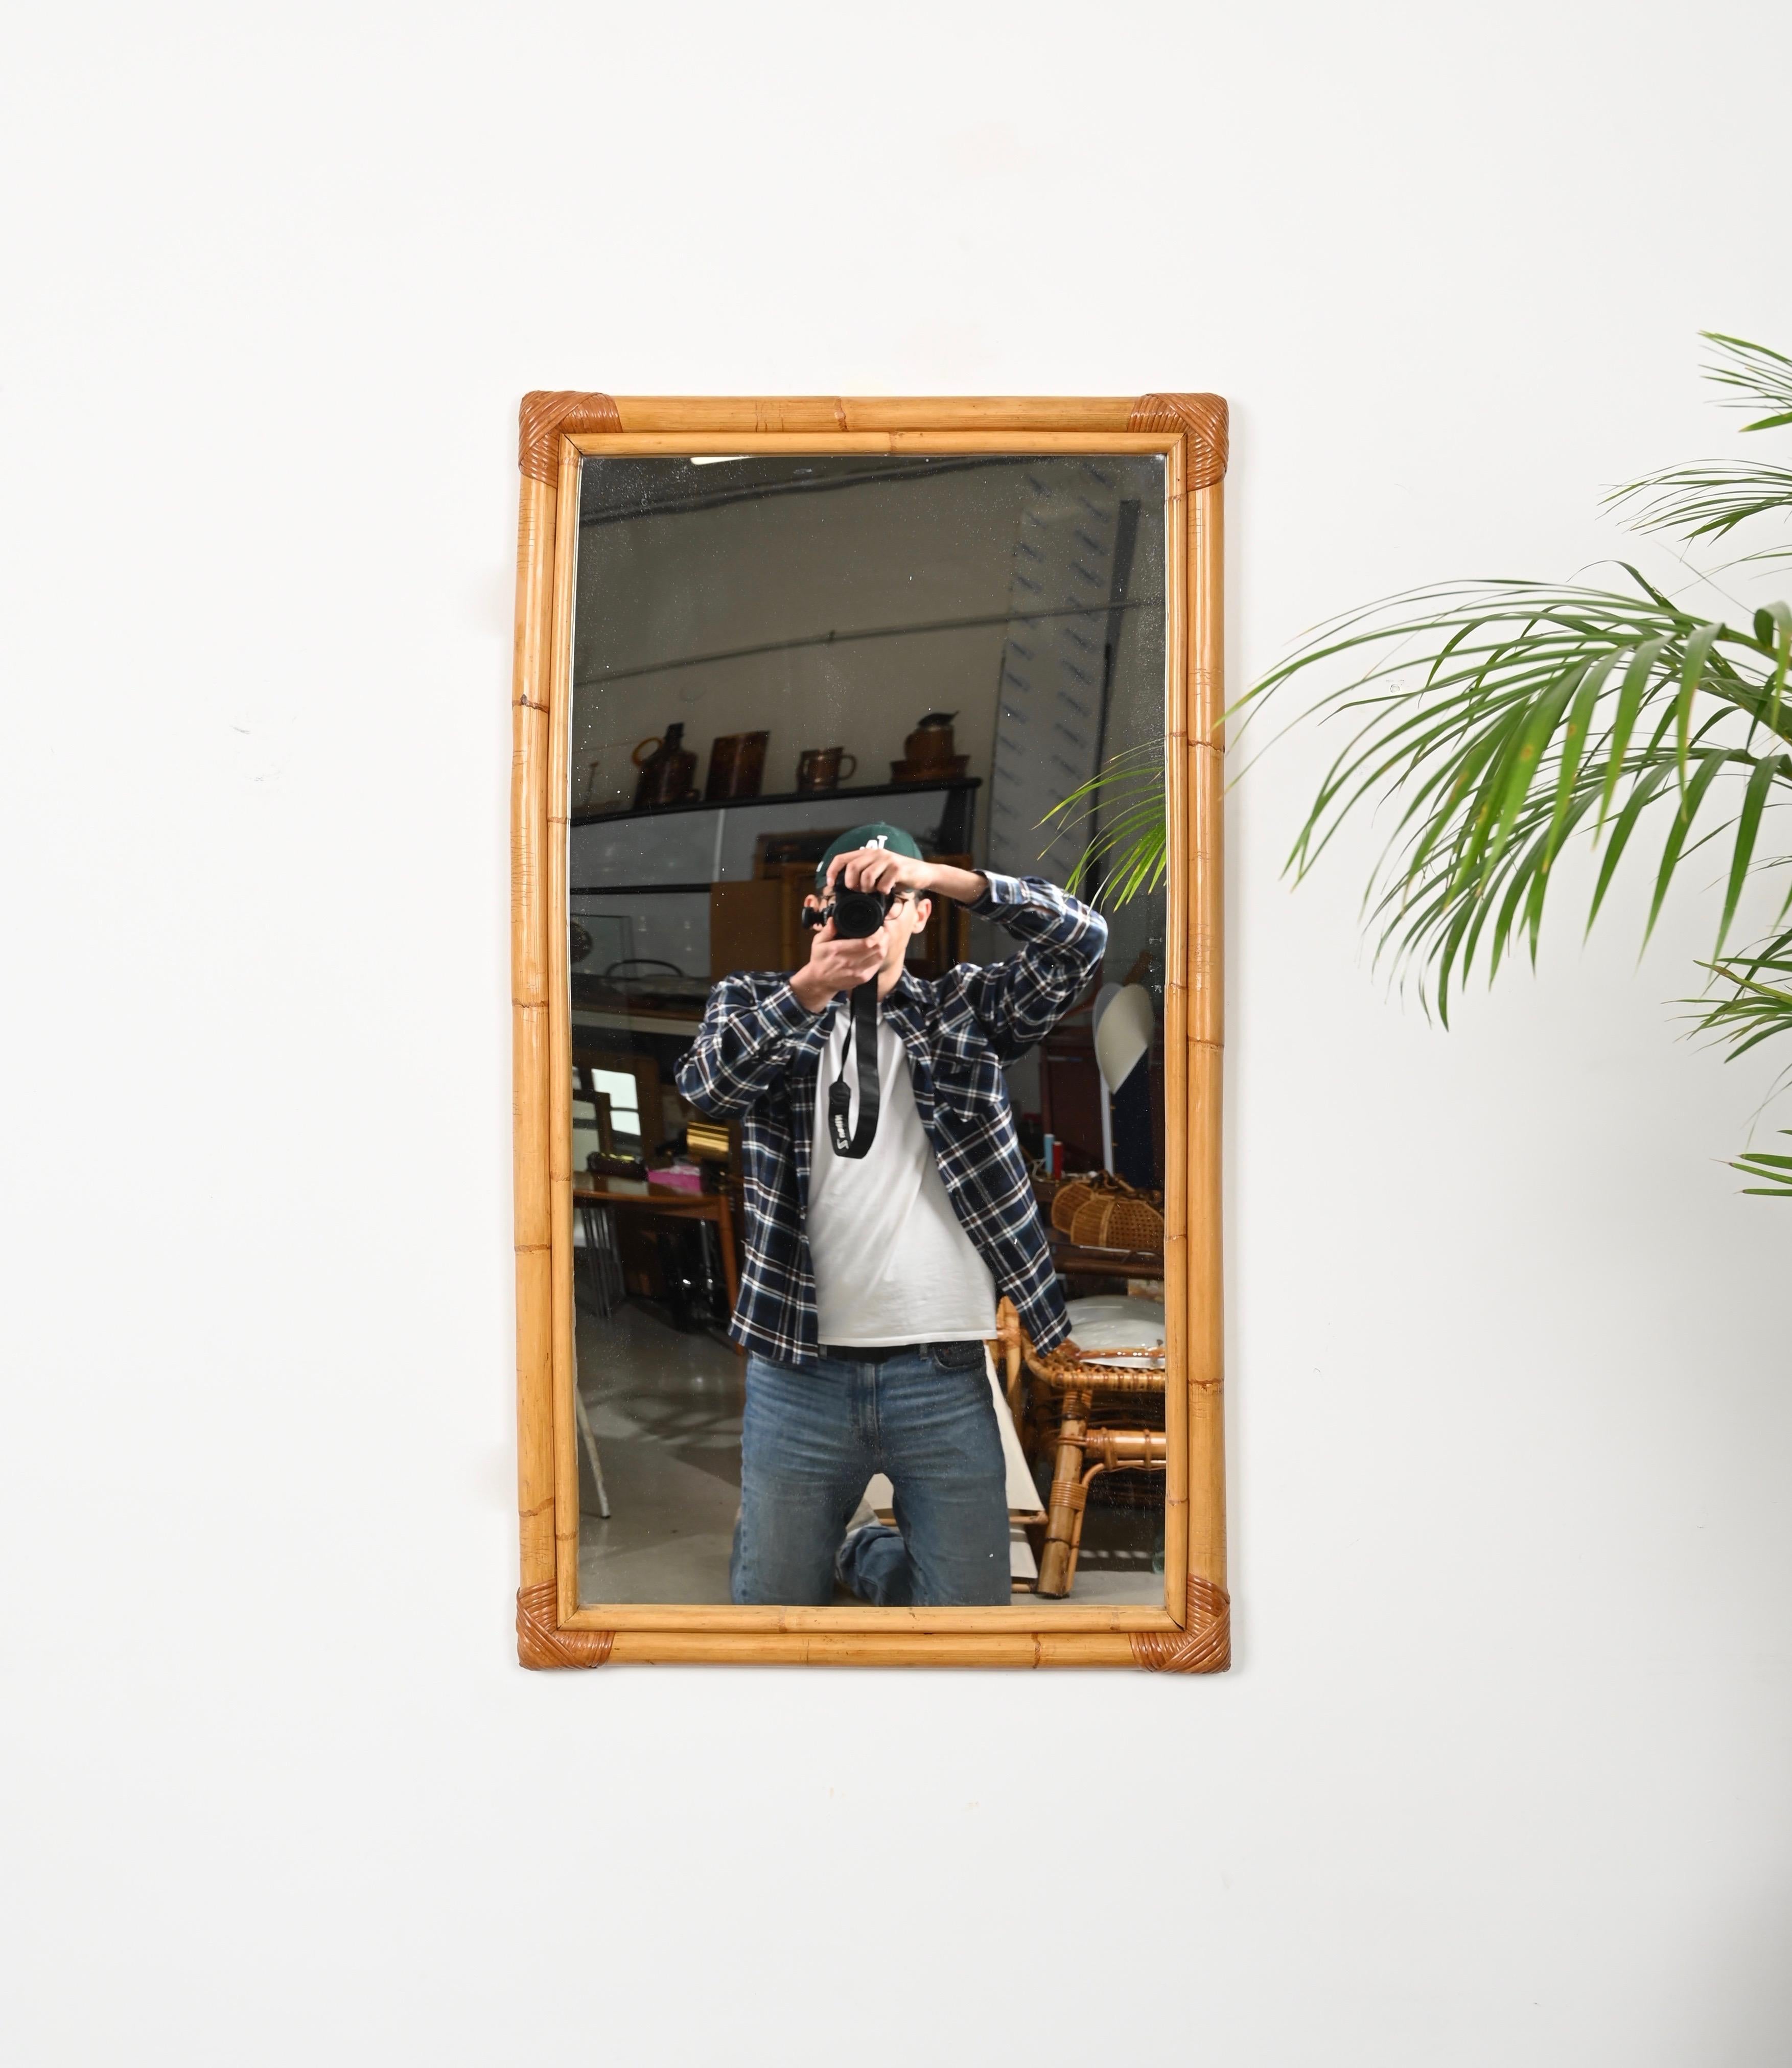 Schöner rechteckiger Spiegel aus der Mitte des Jahrhunderts, komplett aus Bambus und handgeflochtenem Rattangeflecht. Dieser herrliche organische Spiegel wurde in den 1970er Jahren in Italien hergestellt.

Der Spiegel  verfügt über einen großen